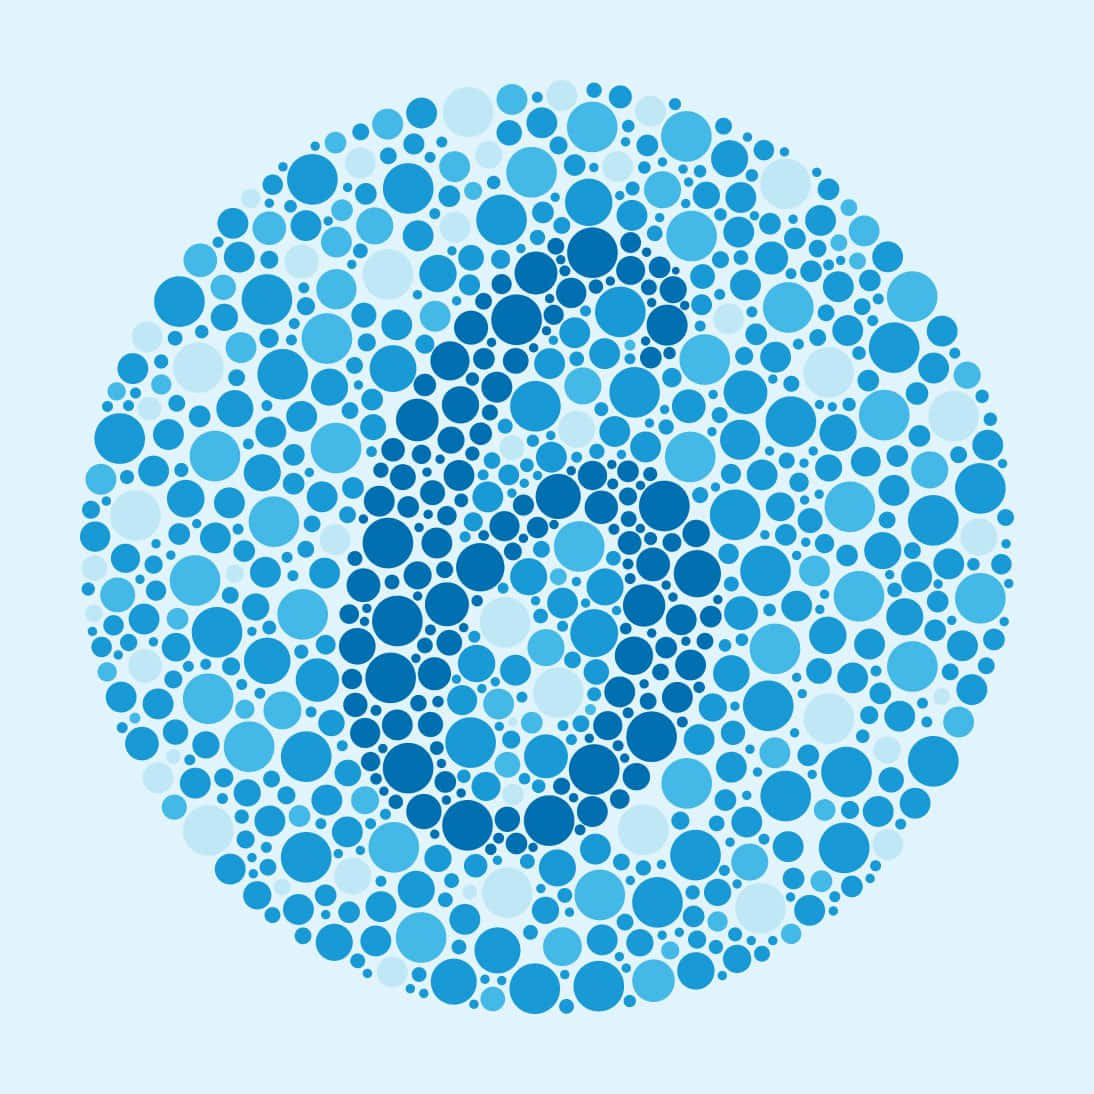 En blå cirkel med prikker i den